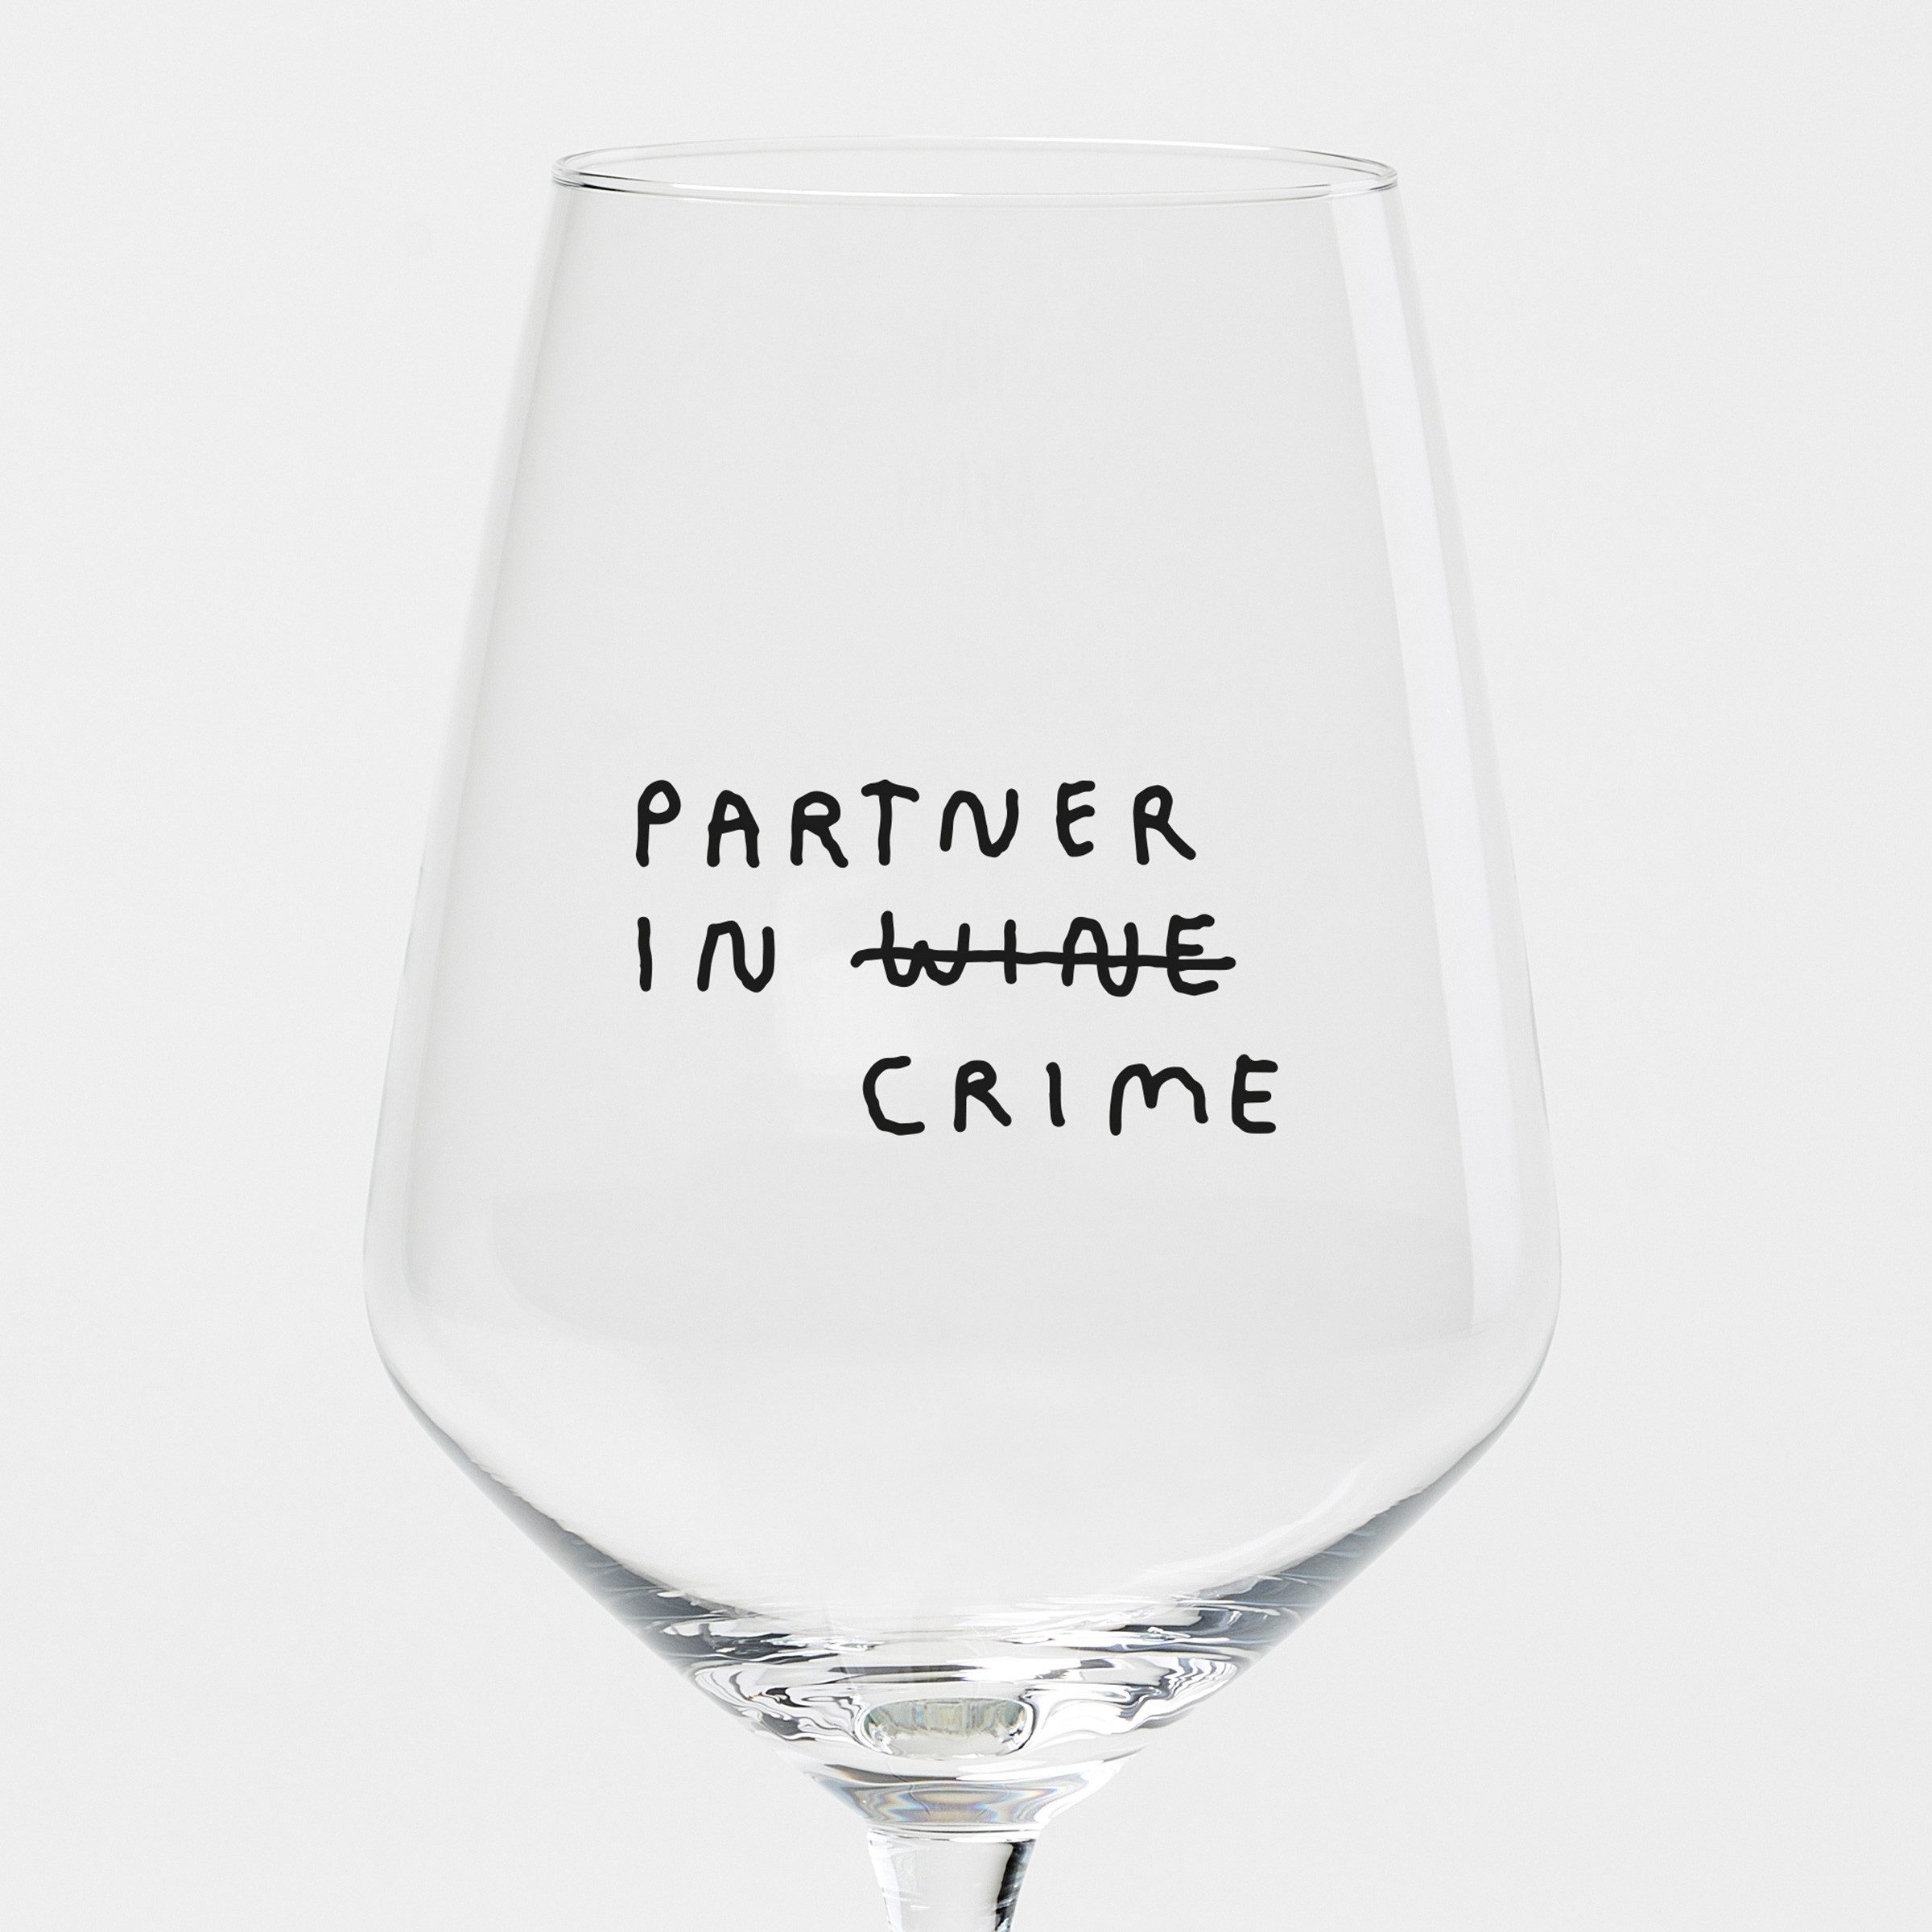 selekkt Weinglas "Partner In Wine" Weinglas by Johanna Schwarzer × selekkt, Glas